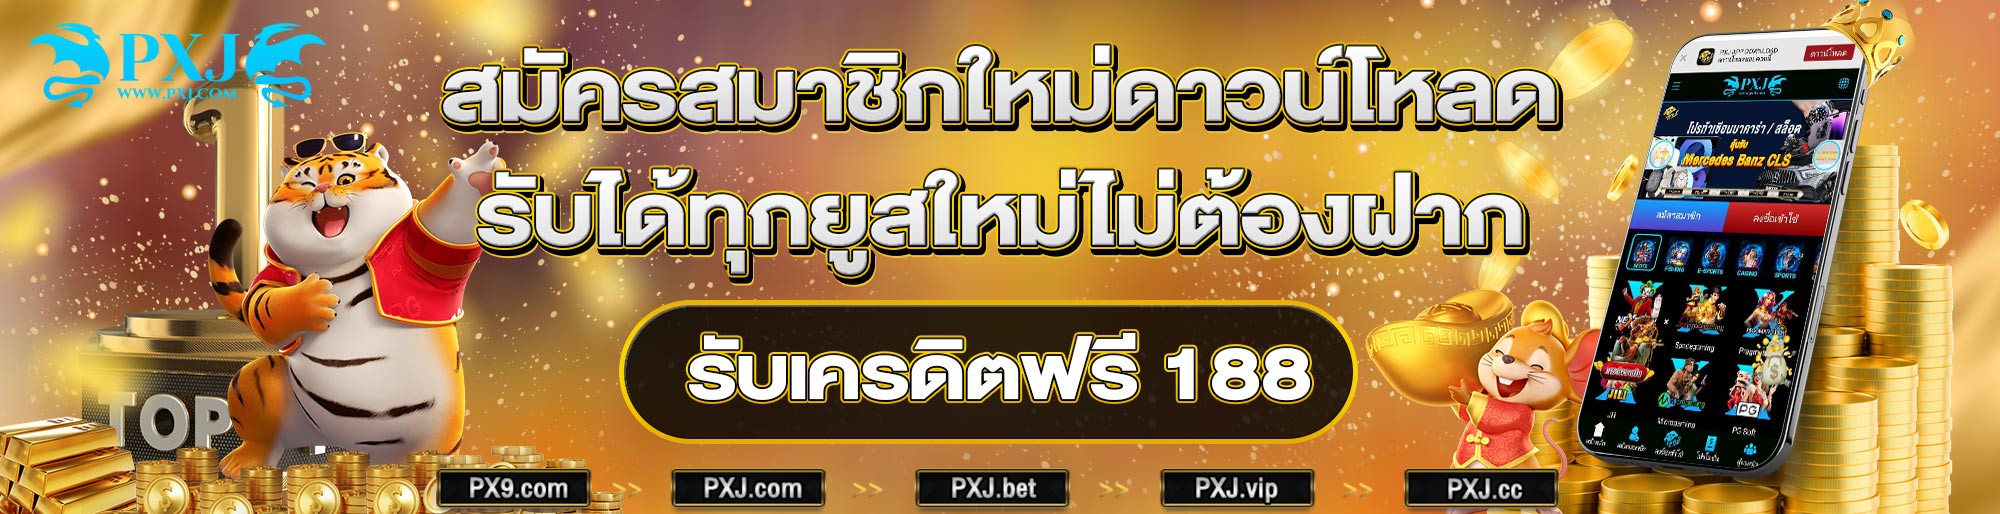 pxj thai banner